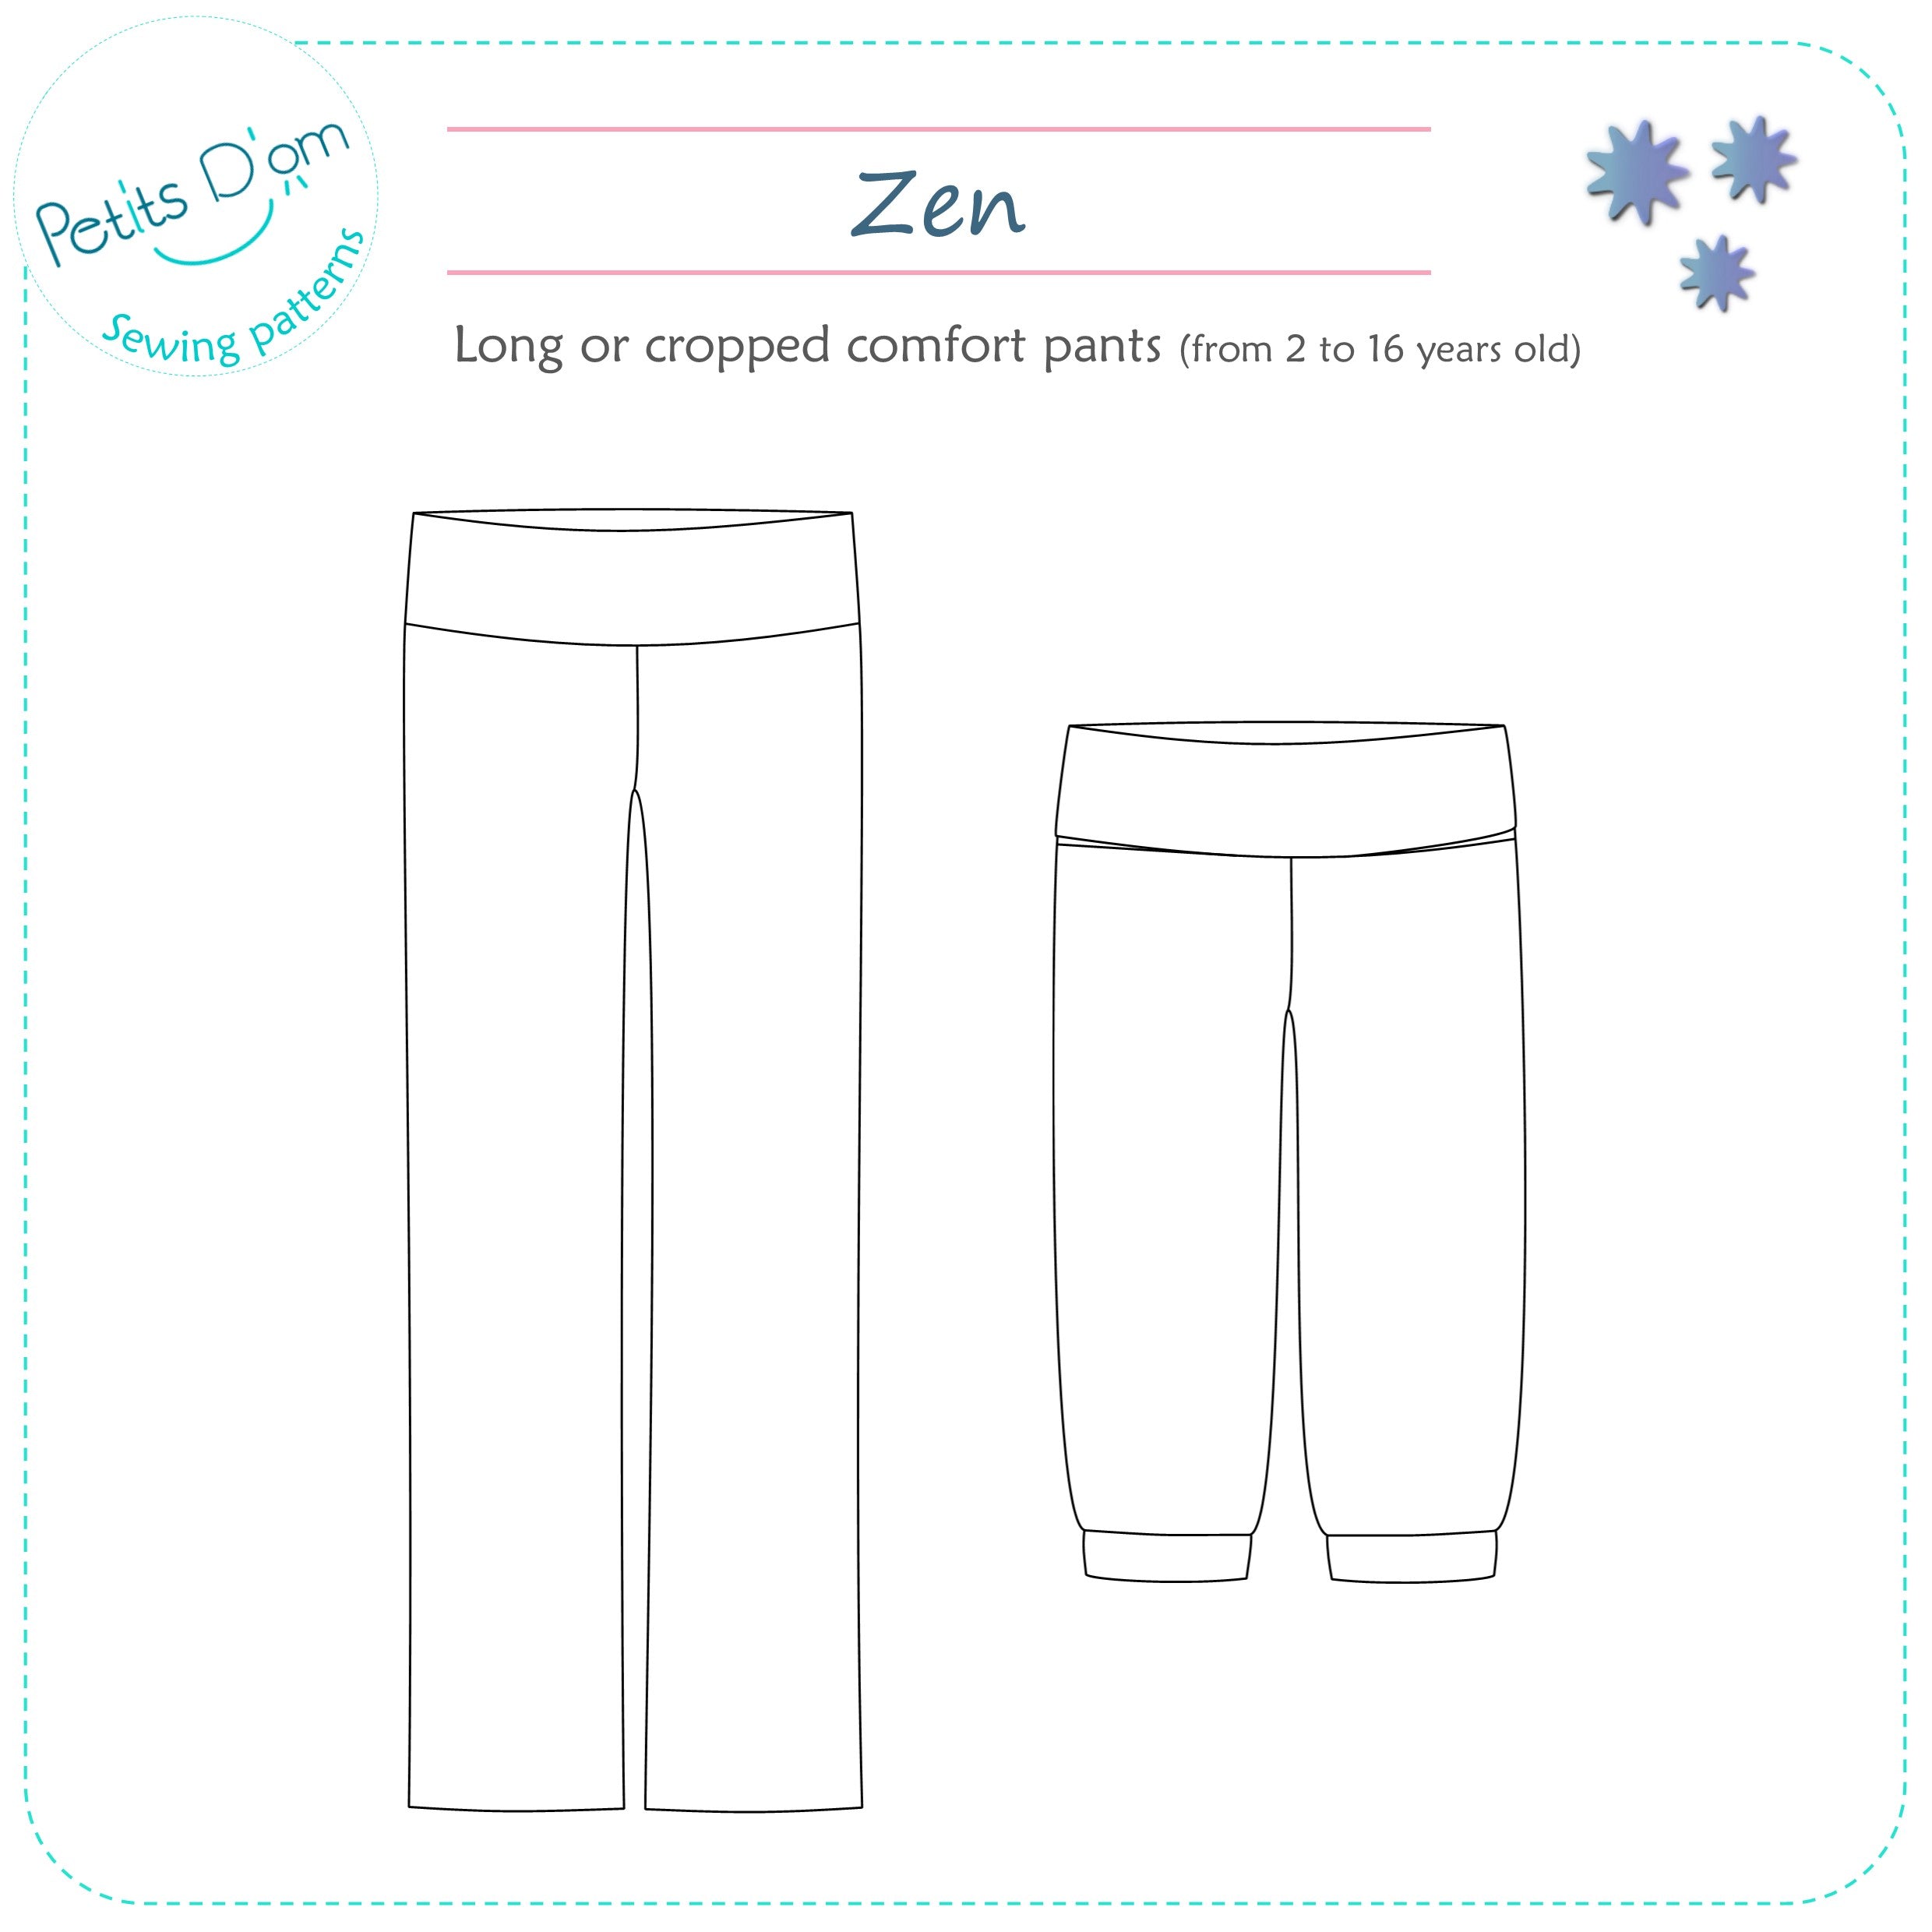 Petits D'om Child/Teen Zen Pants